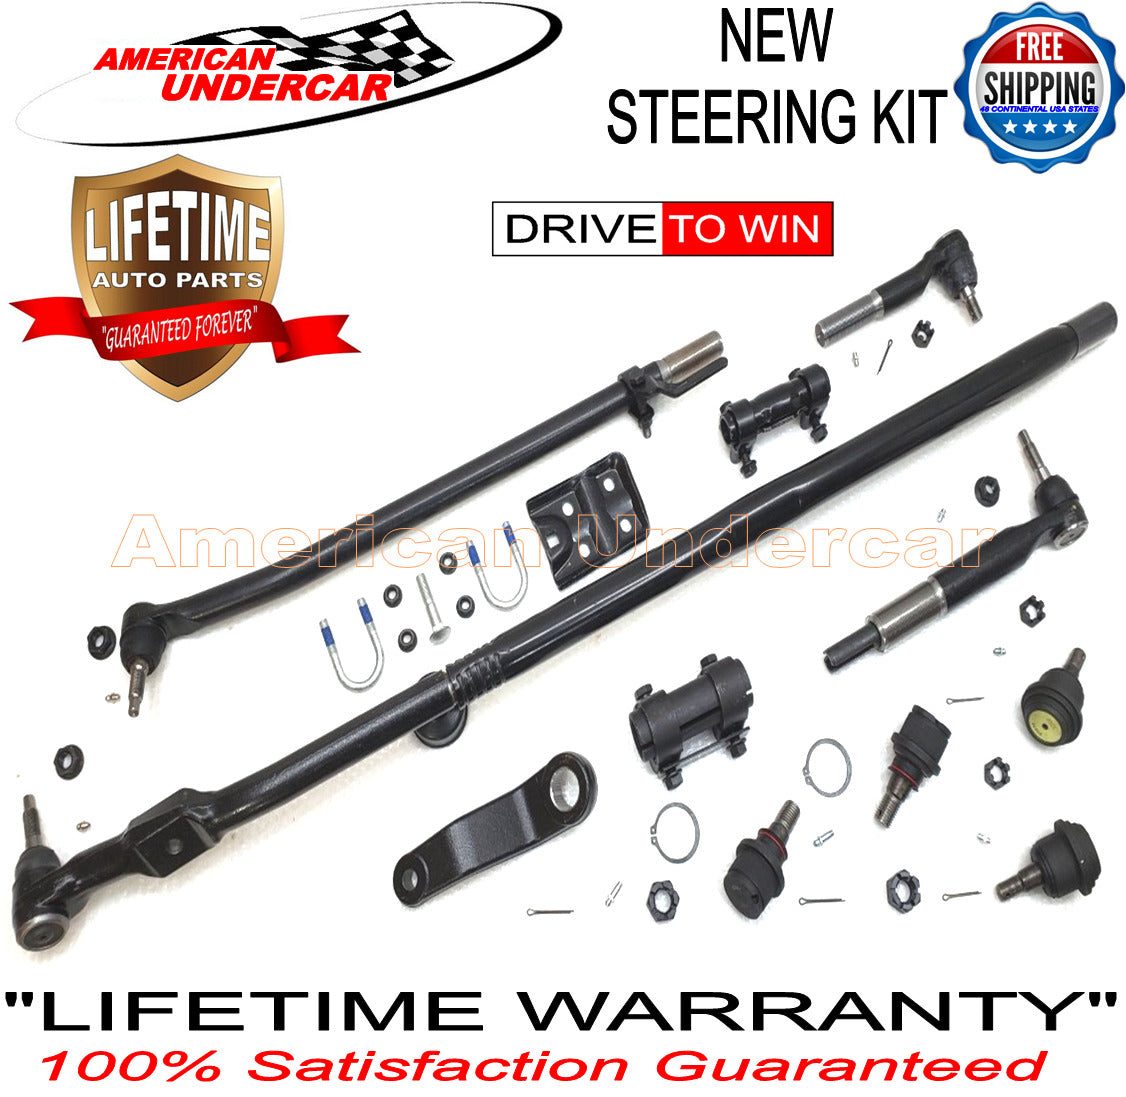 Lifetime New T Design Steering Upgrade Kit for 2003-2013 Dodge Ram 2500, 3500 4x4